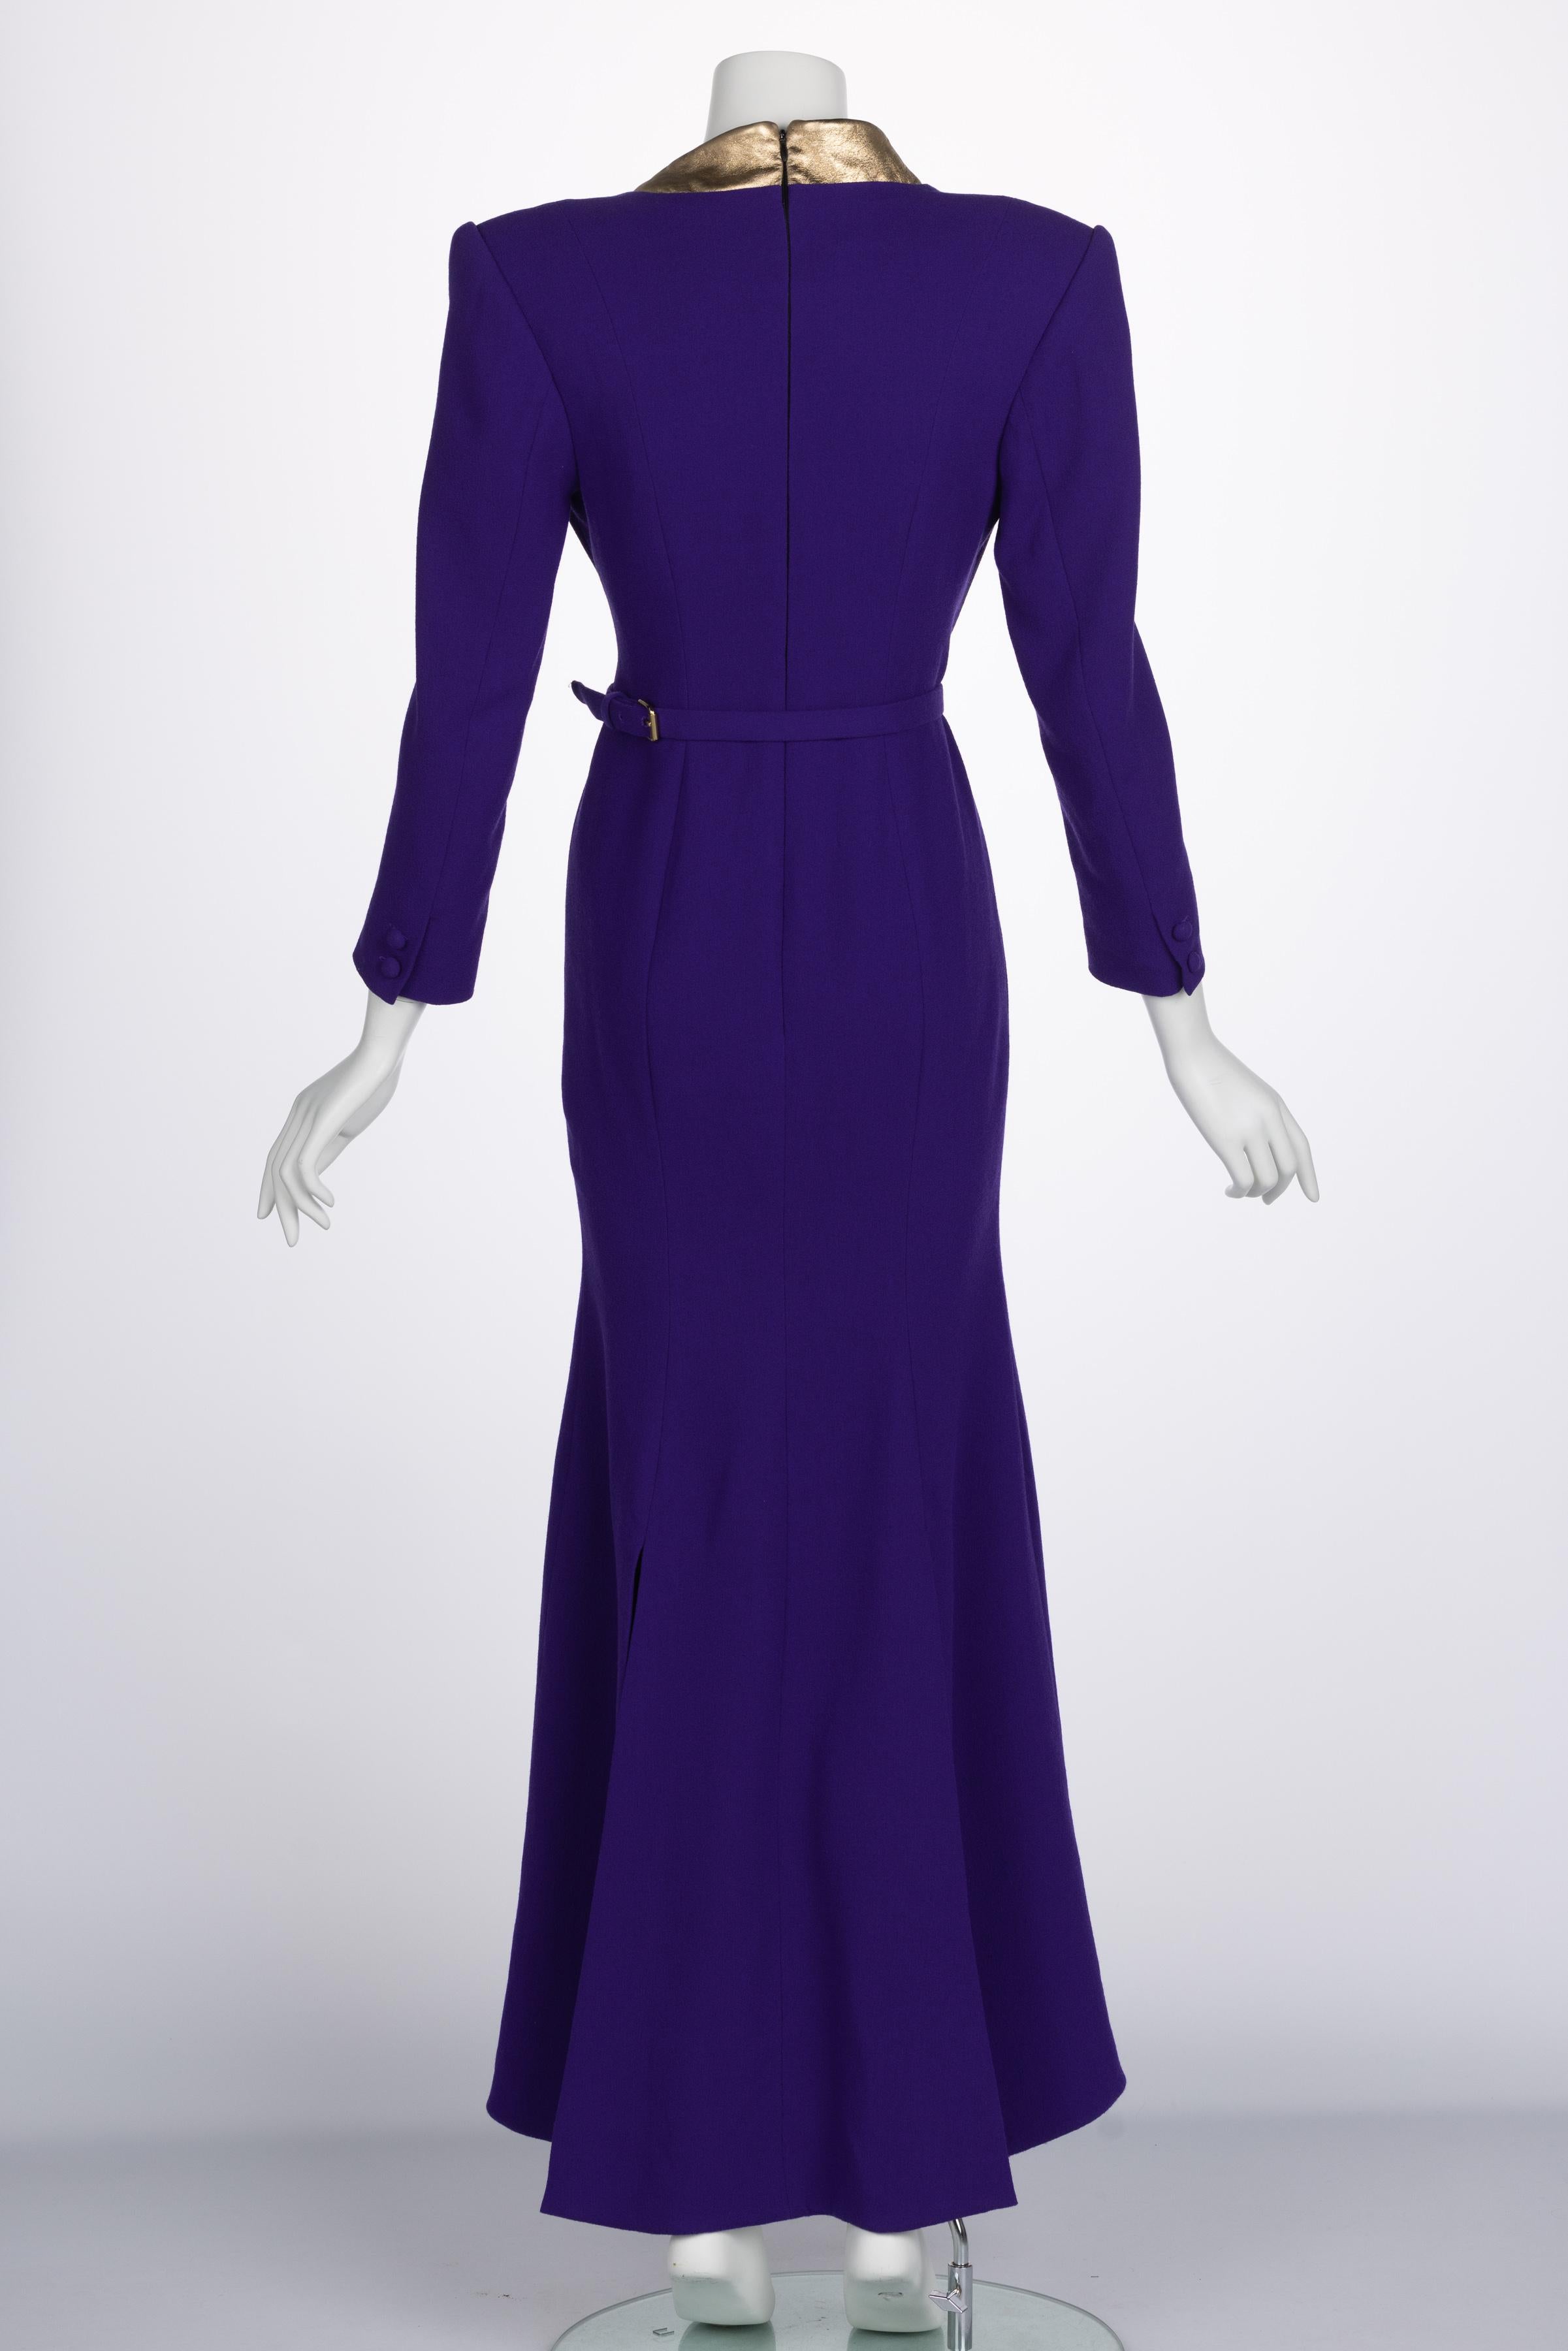 Ronald Van der kemp Haute Couture Dress, 2018 For Sale 2